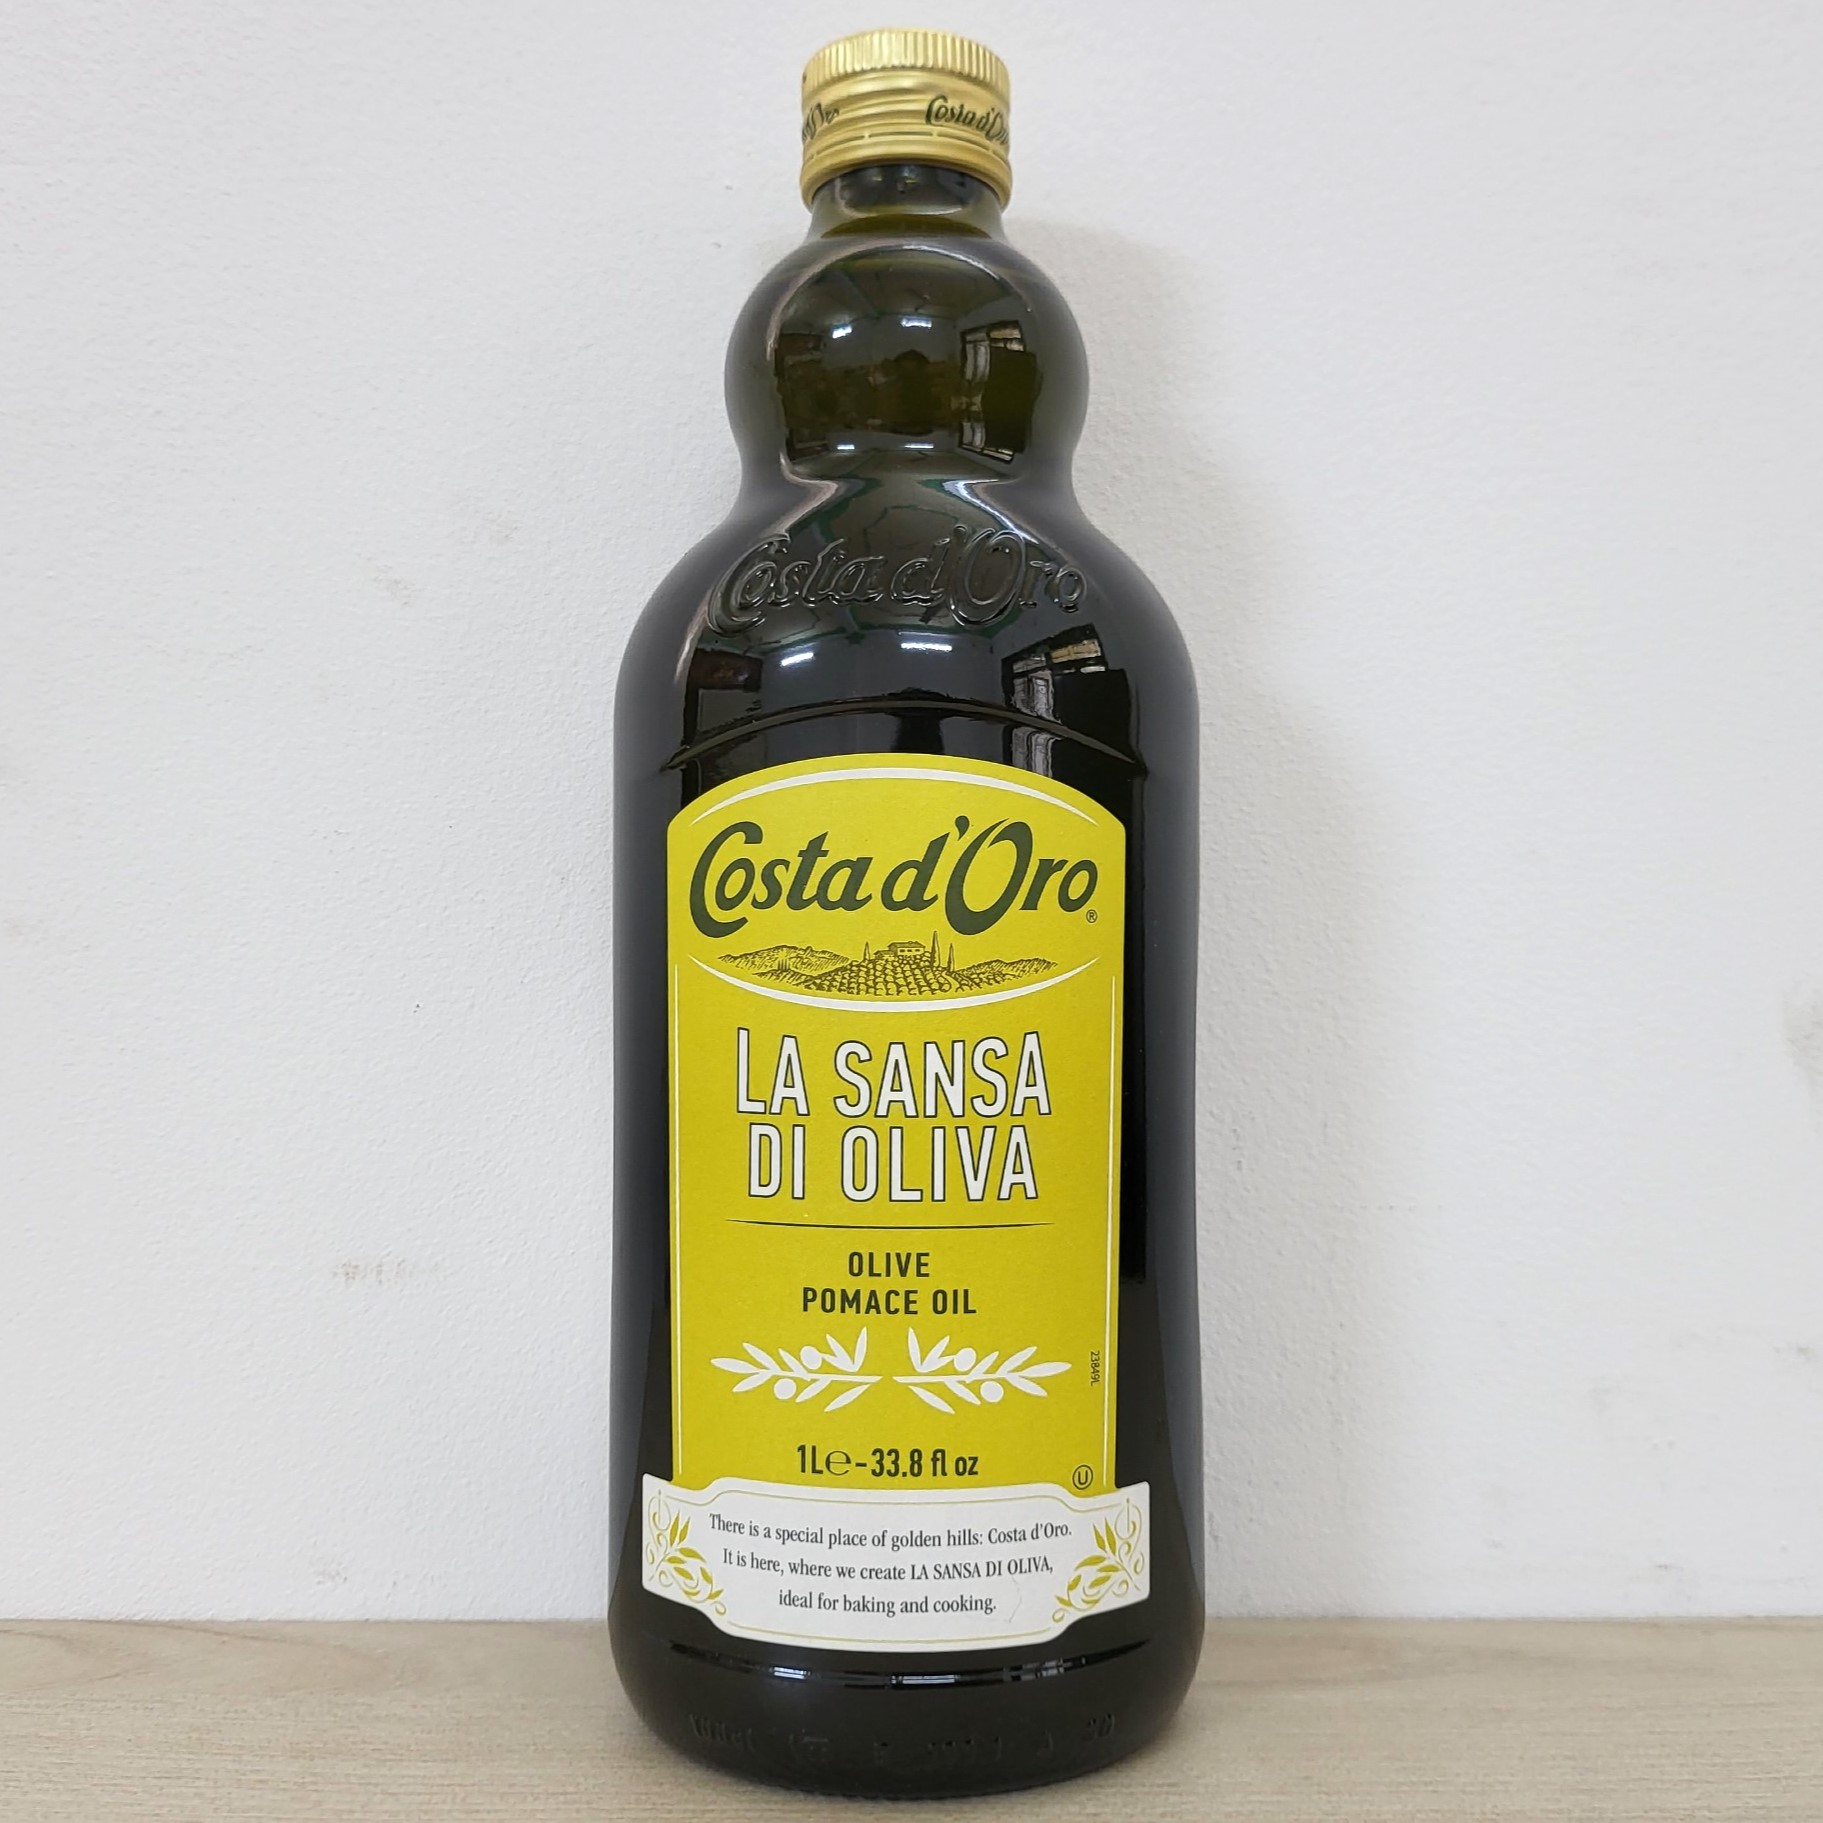 COSTA D ORO Chai PMC 1 L DẦU Ô LIU TINH LUYỆN Olive Pomace Oil